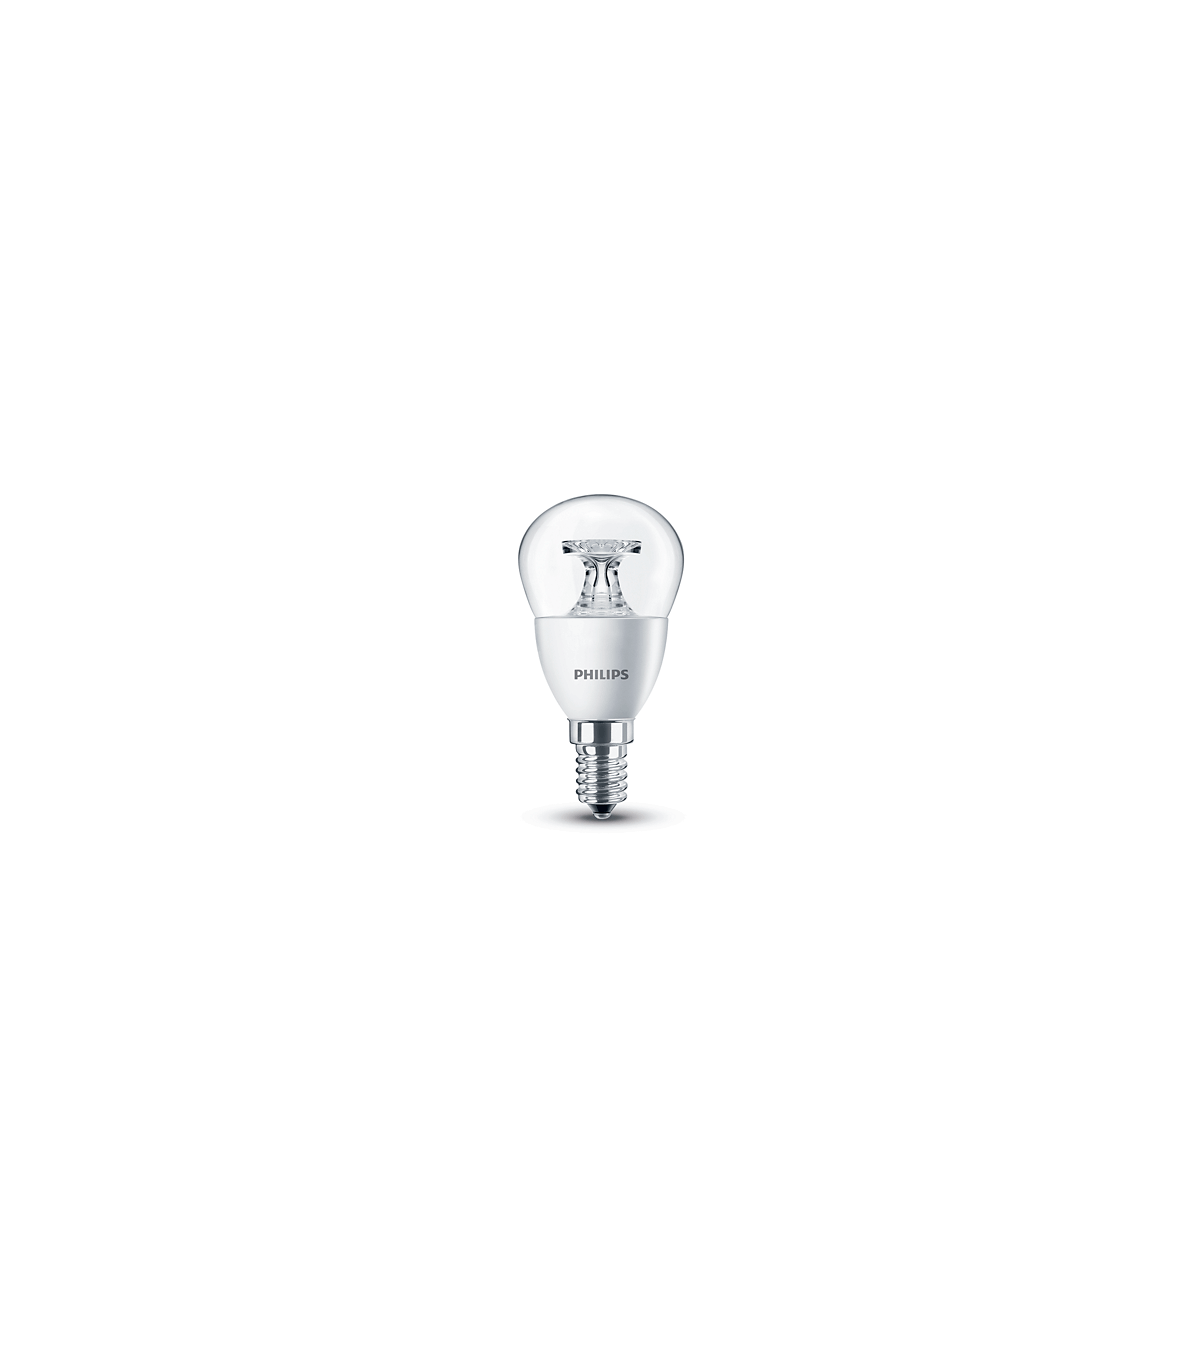 Osram Ampoule LED à réflecteur PAR16 GU10 Blanc chaud 50 W 350 lm Glow Dim